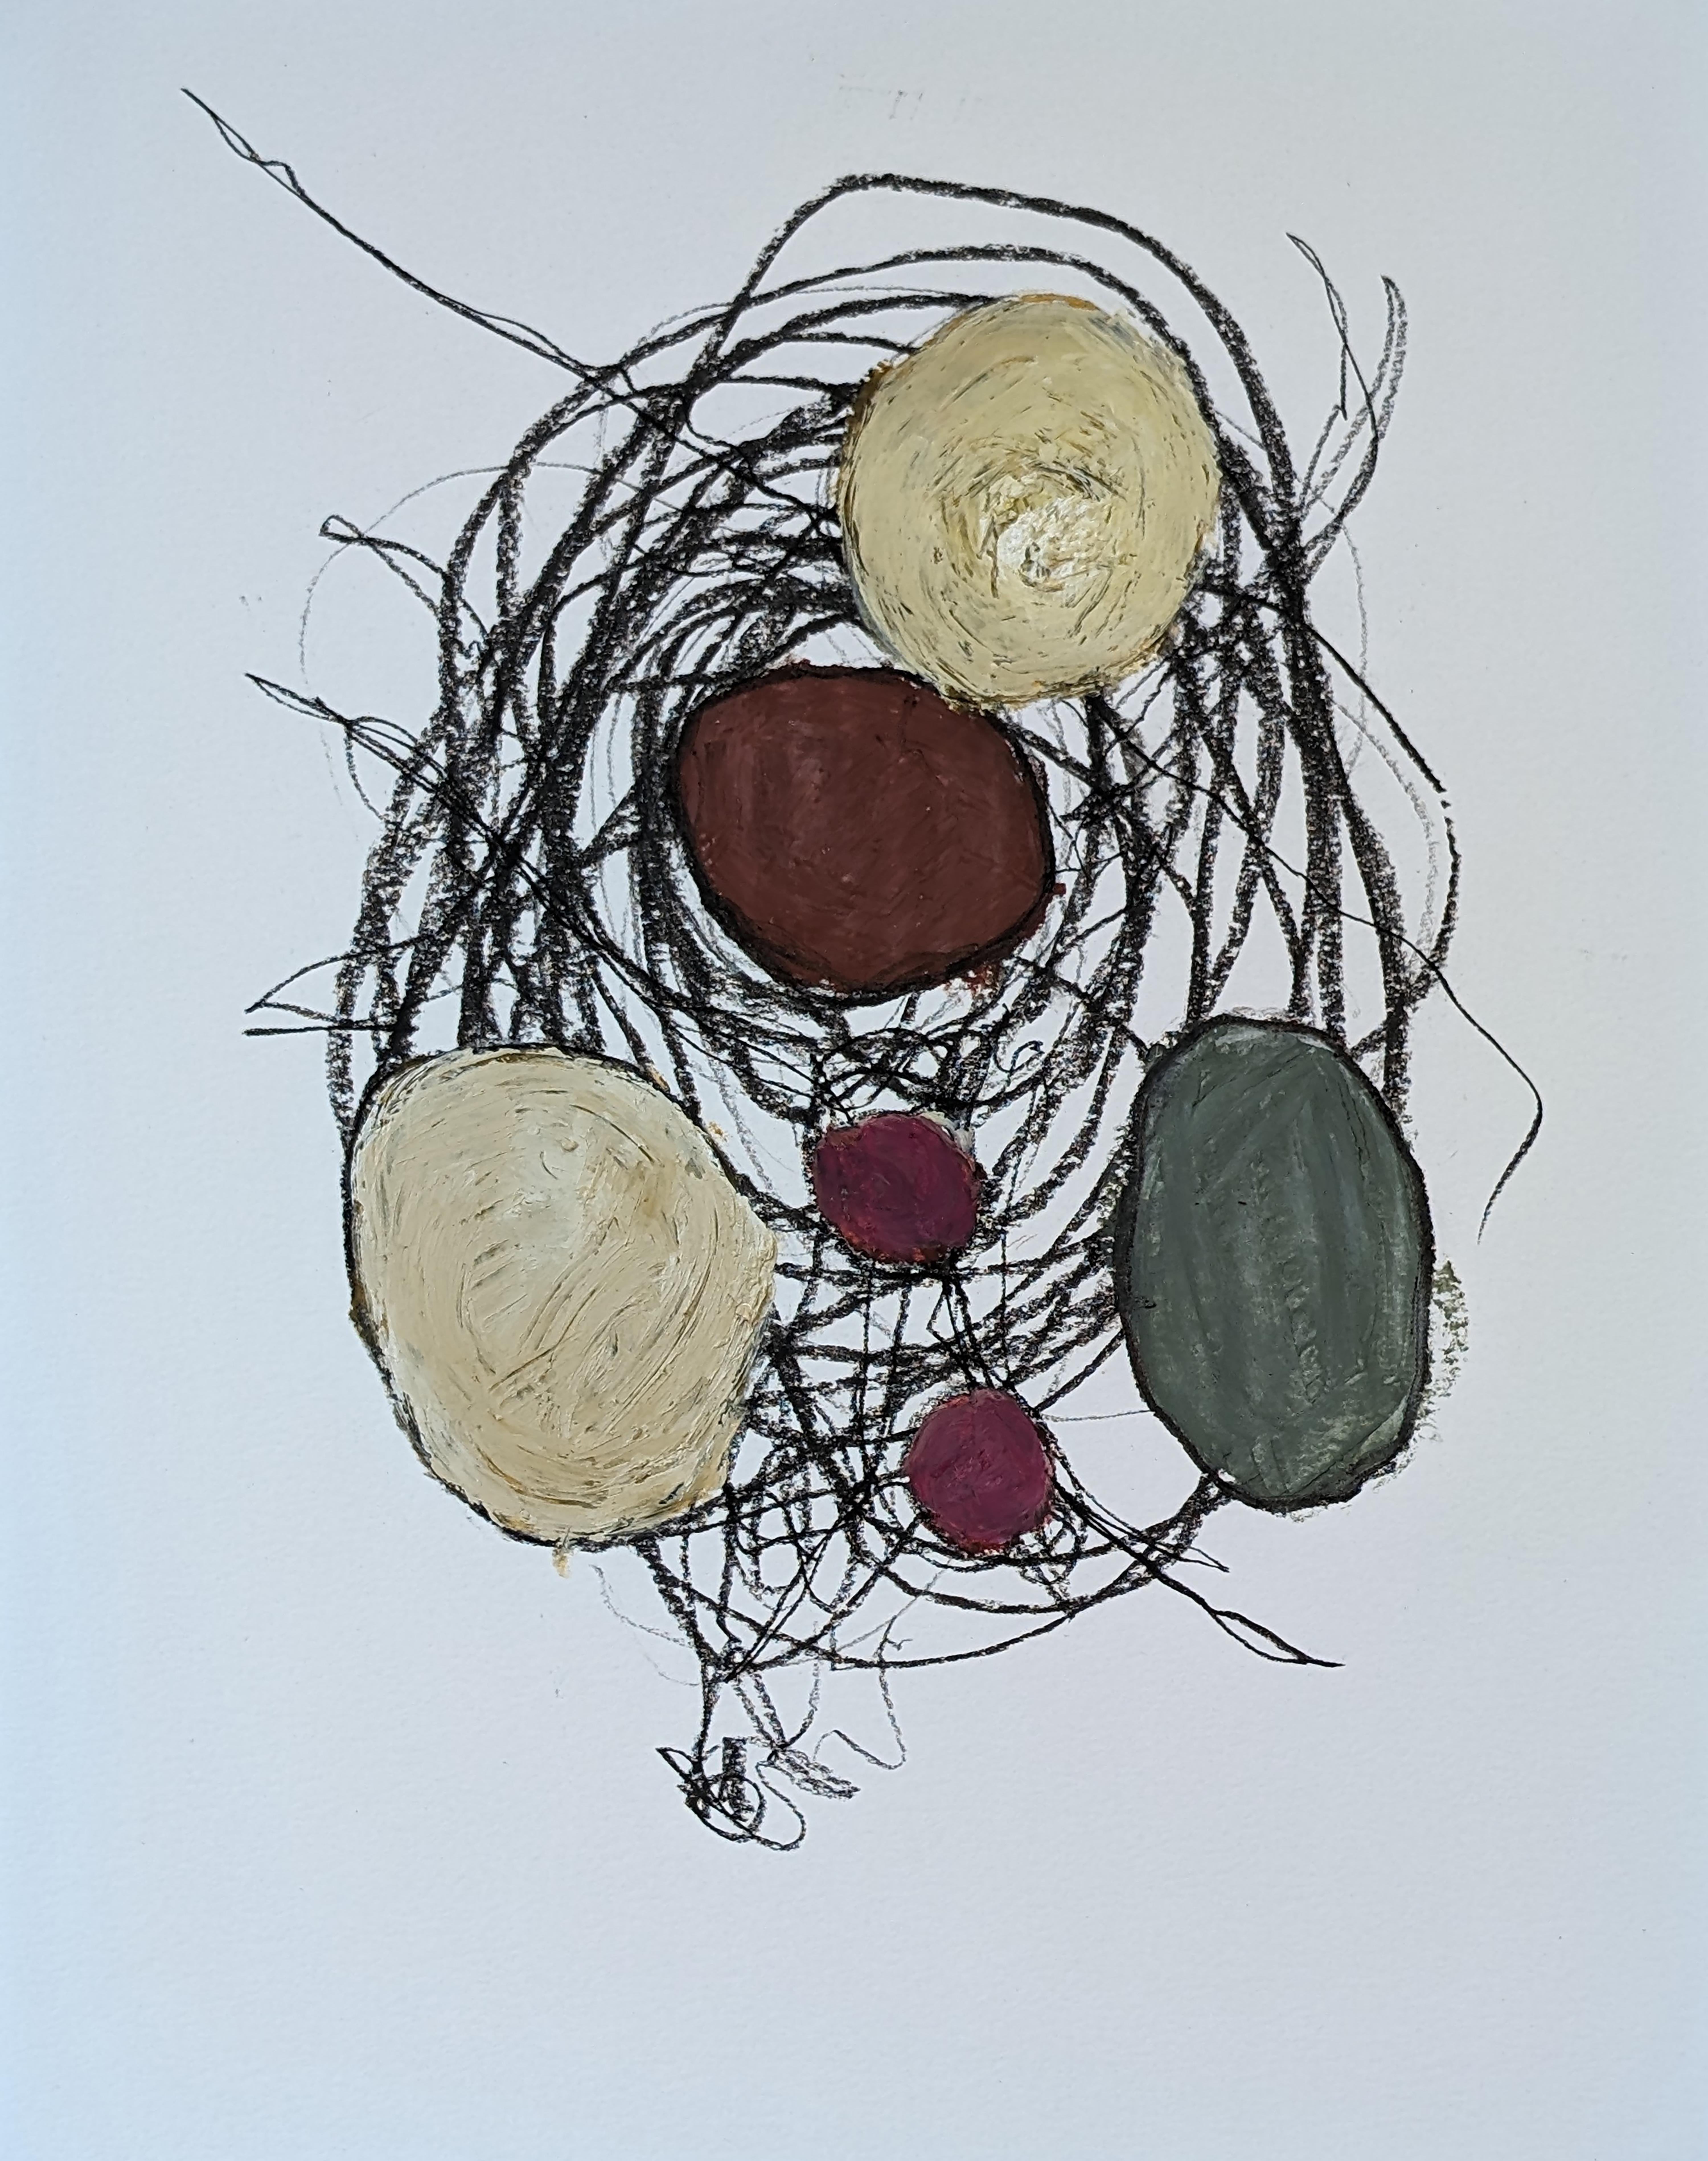 Abstract Drawing Vincent Salvati - "Structures D02" Dessin abstrait contemporain à l'huile sur papier